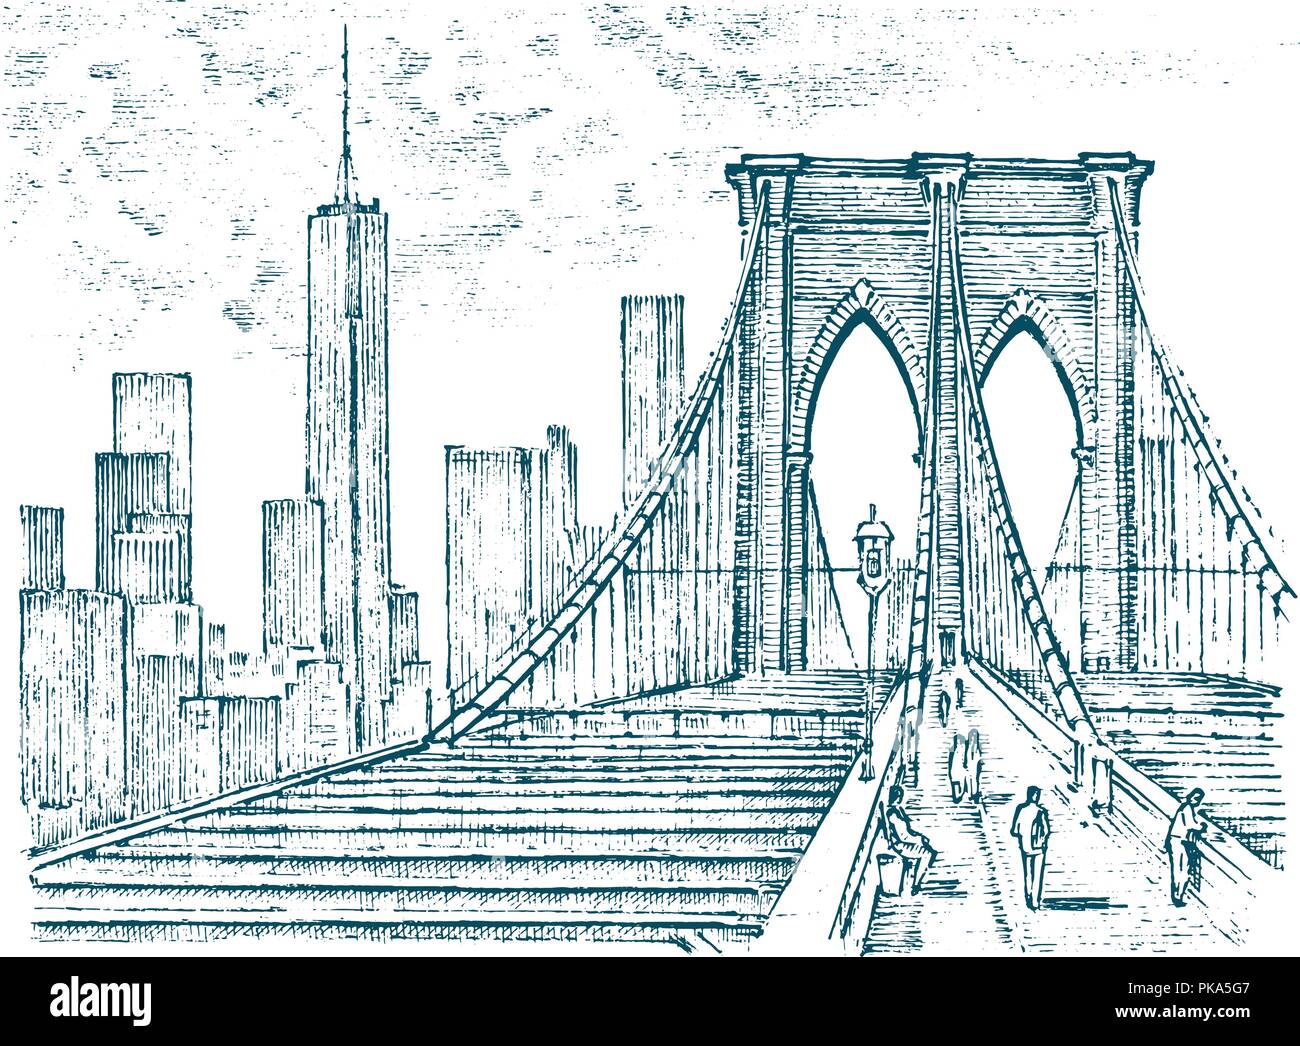 Historische Architektur mit Gebäuden, Perspektive betrachten. Vintage Landschaft. Brooklyn Bridge, New York. Graviert Hand in alte Skizze und schwarzweiß gezeichnet. Reisen Postkarte. Stock Vektor